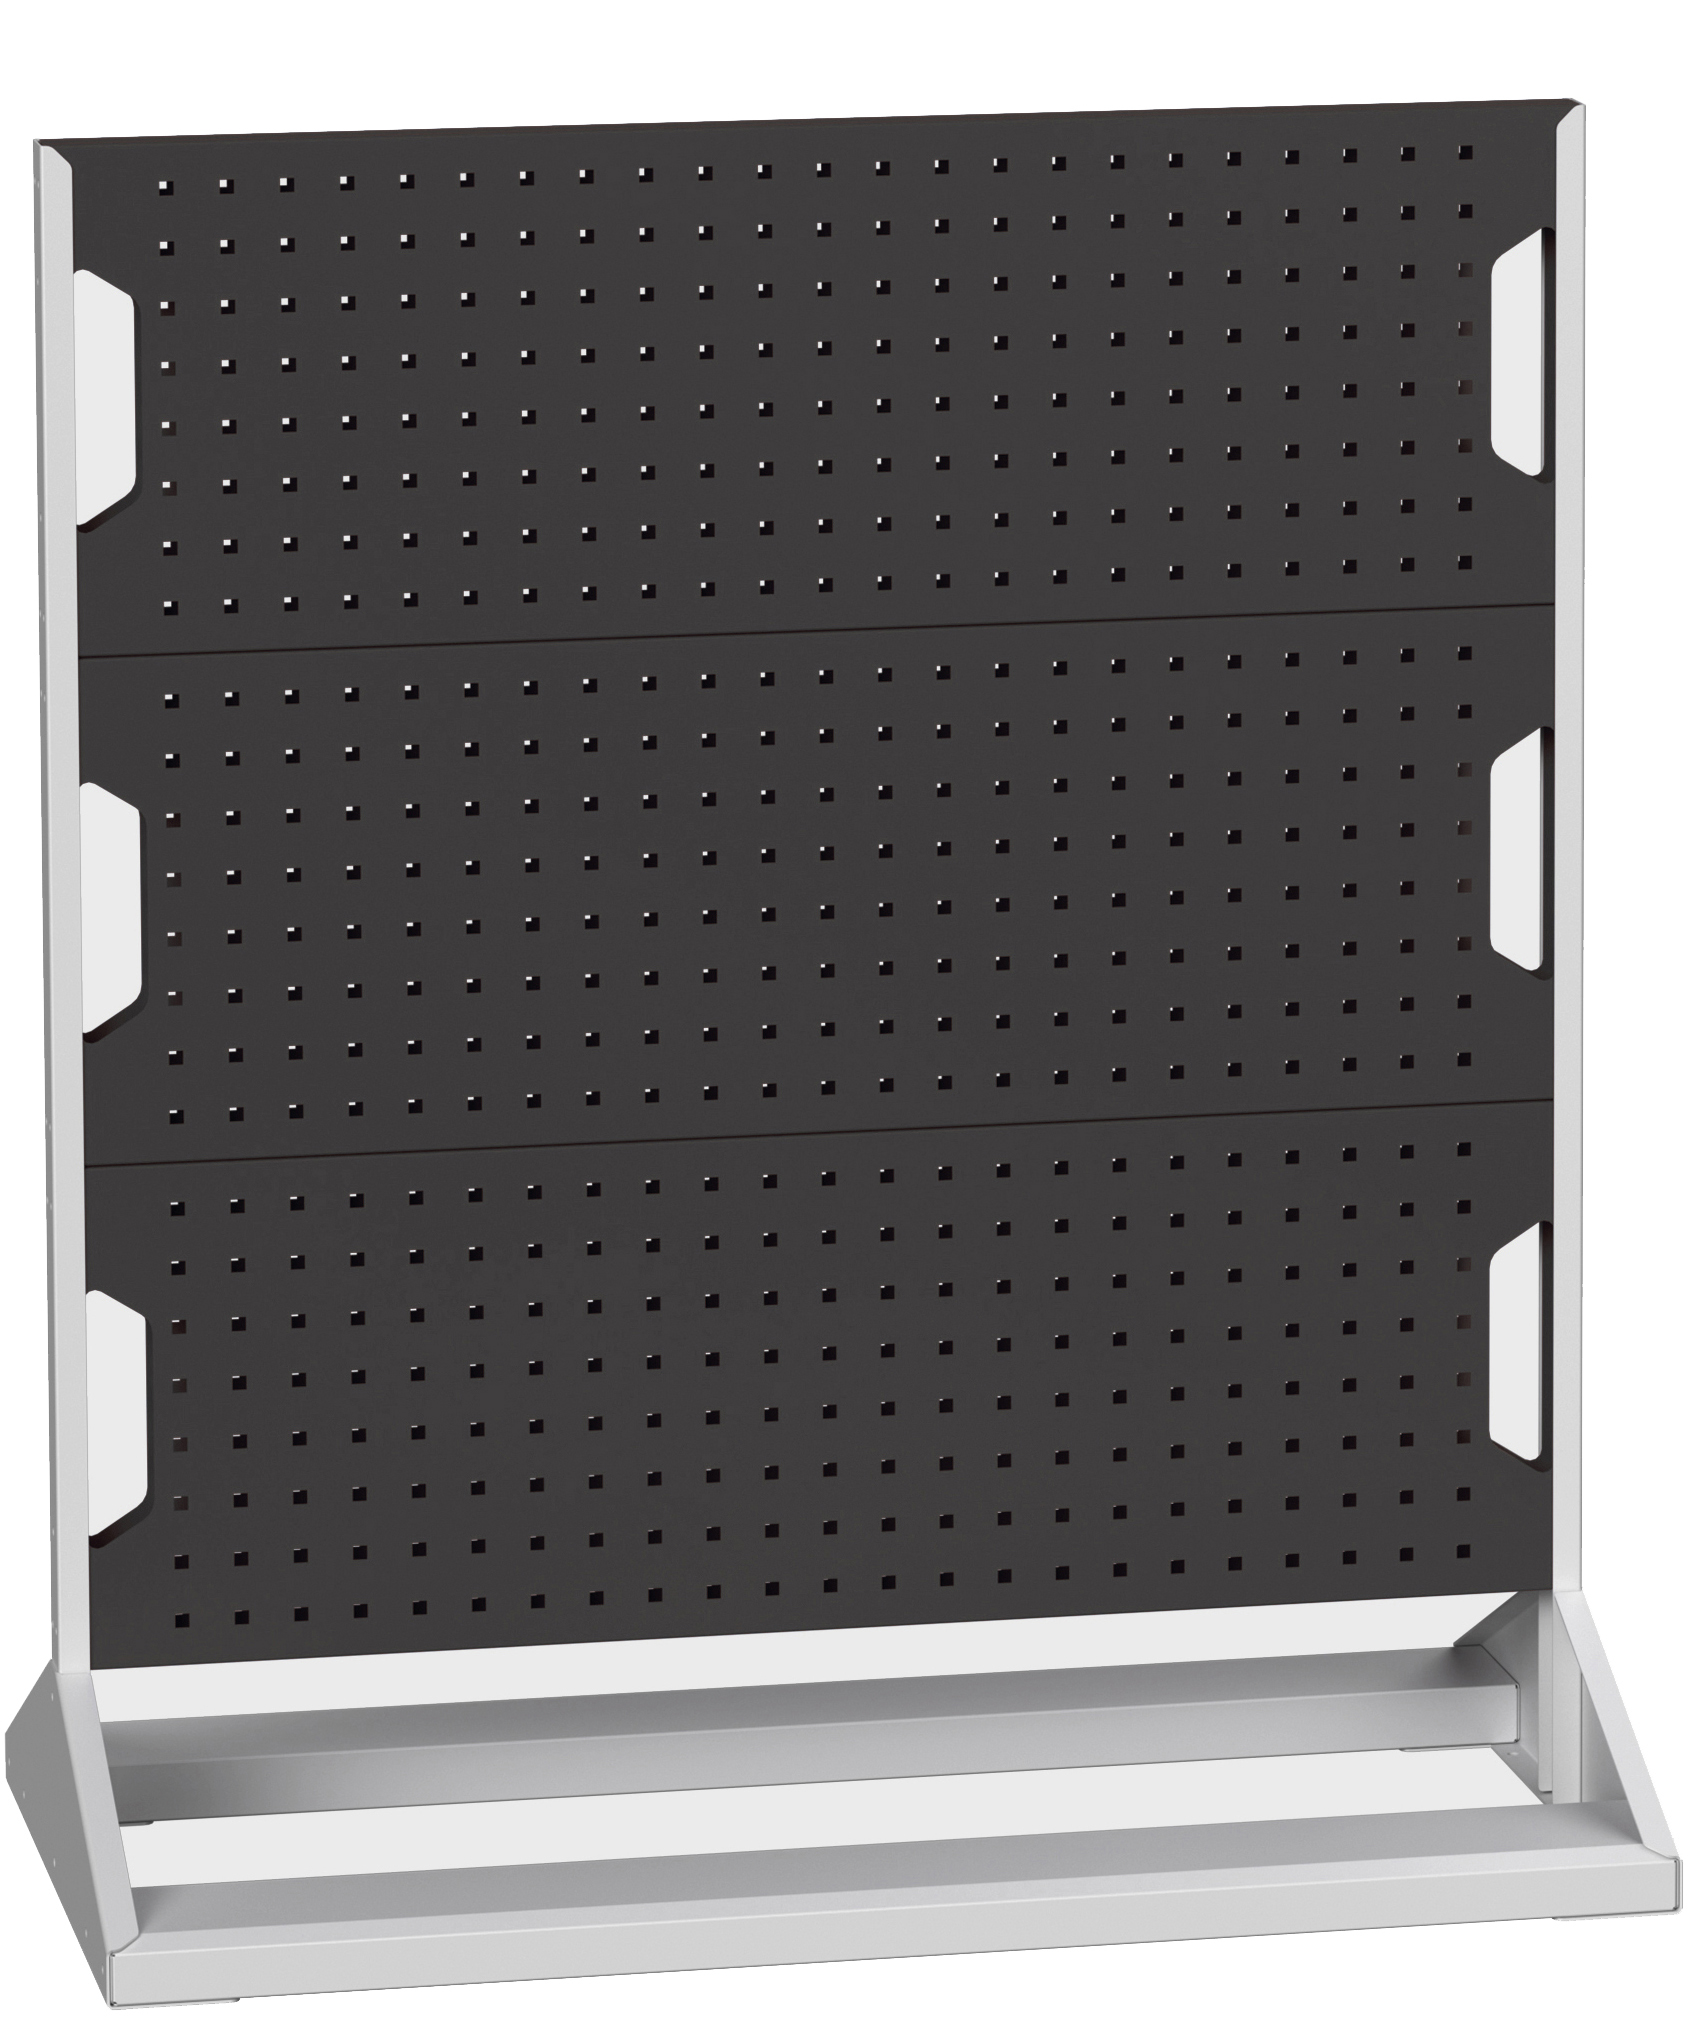 Bott Perfo Panel Rack (Double Sided) - 16917100.19V